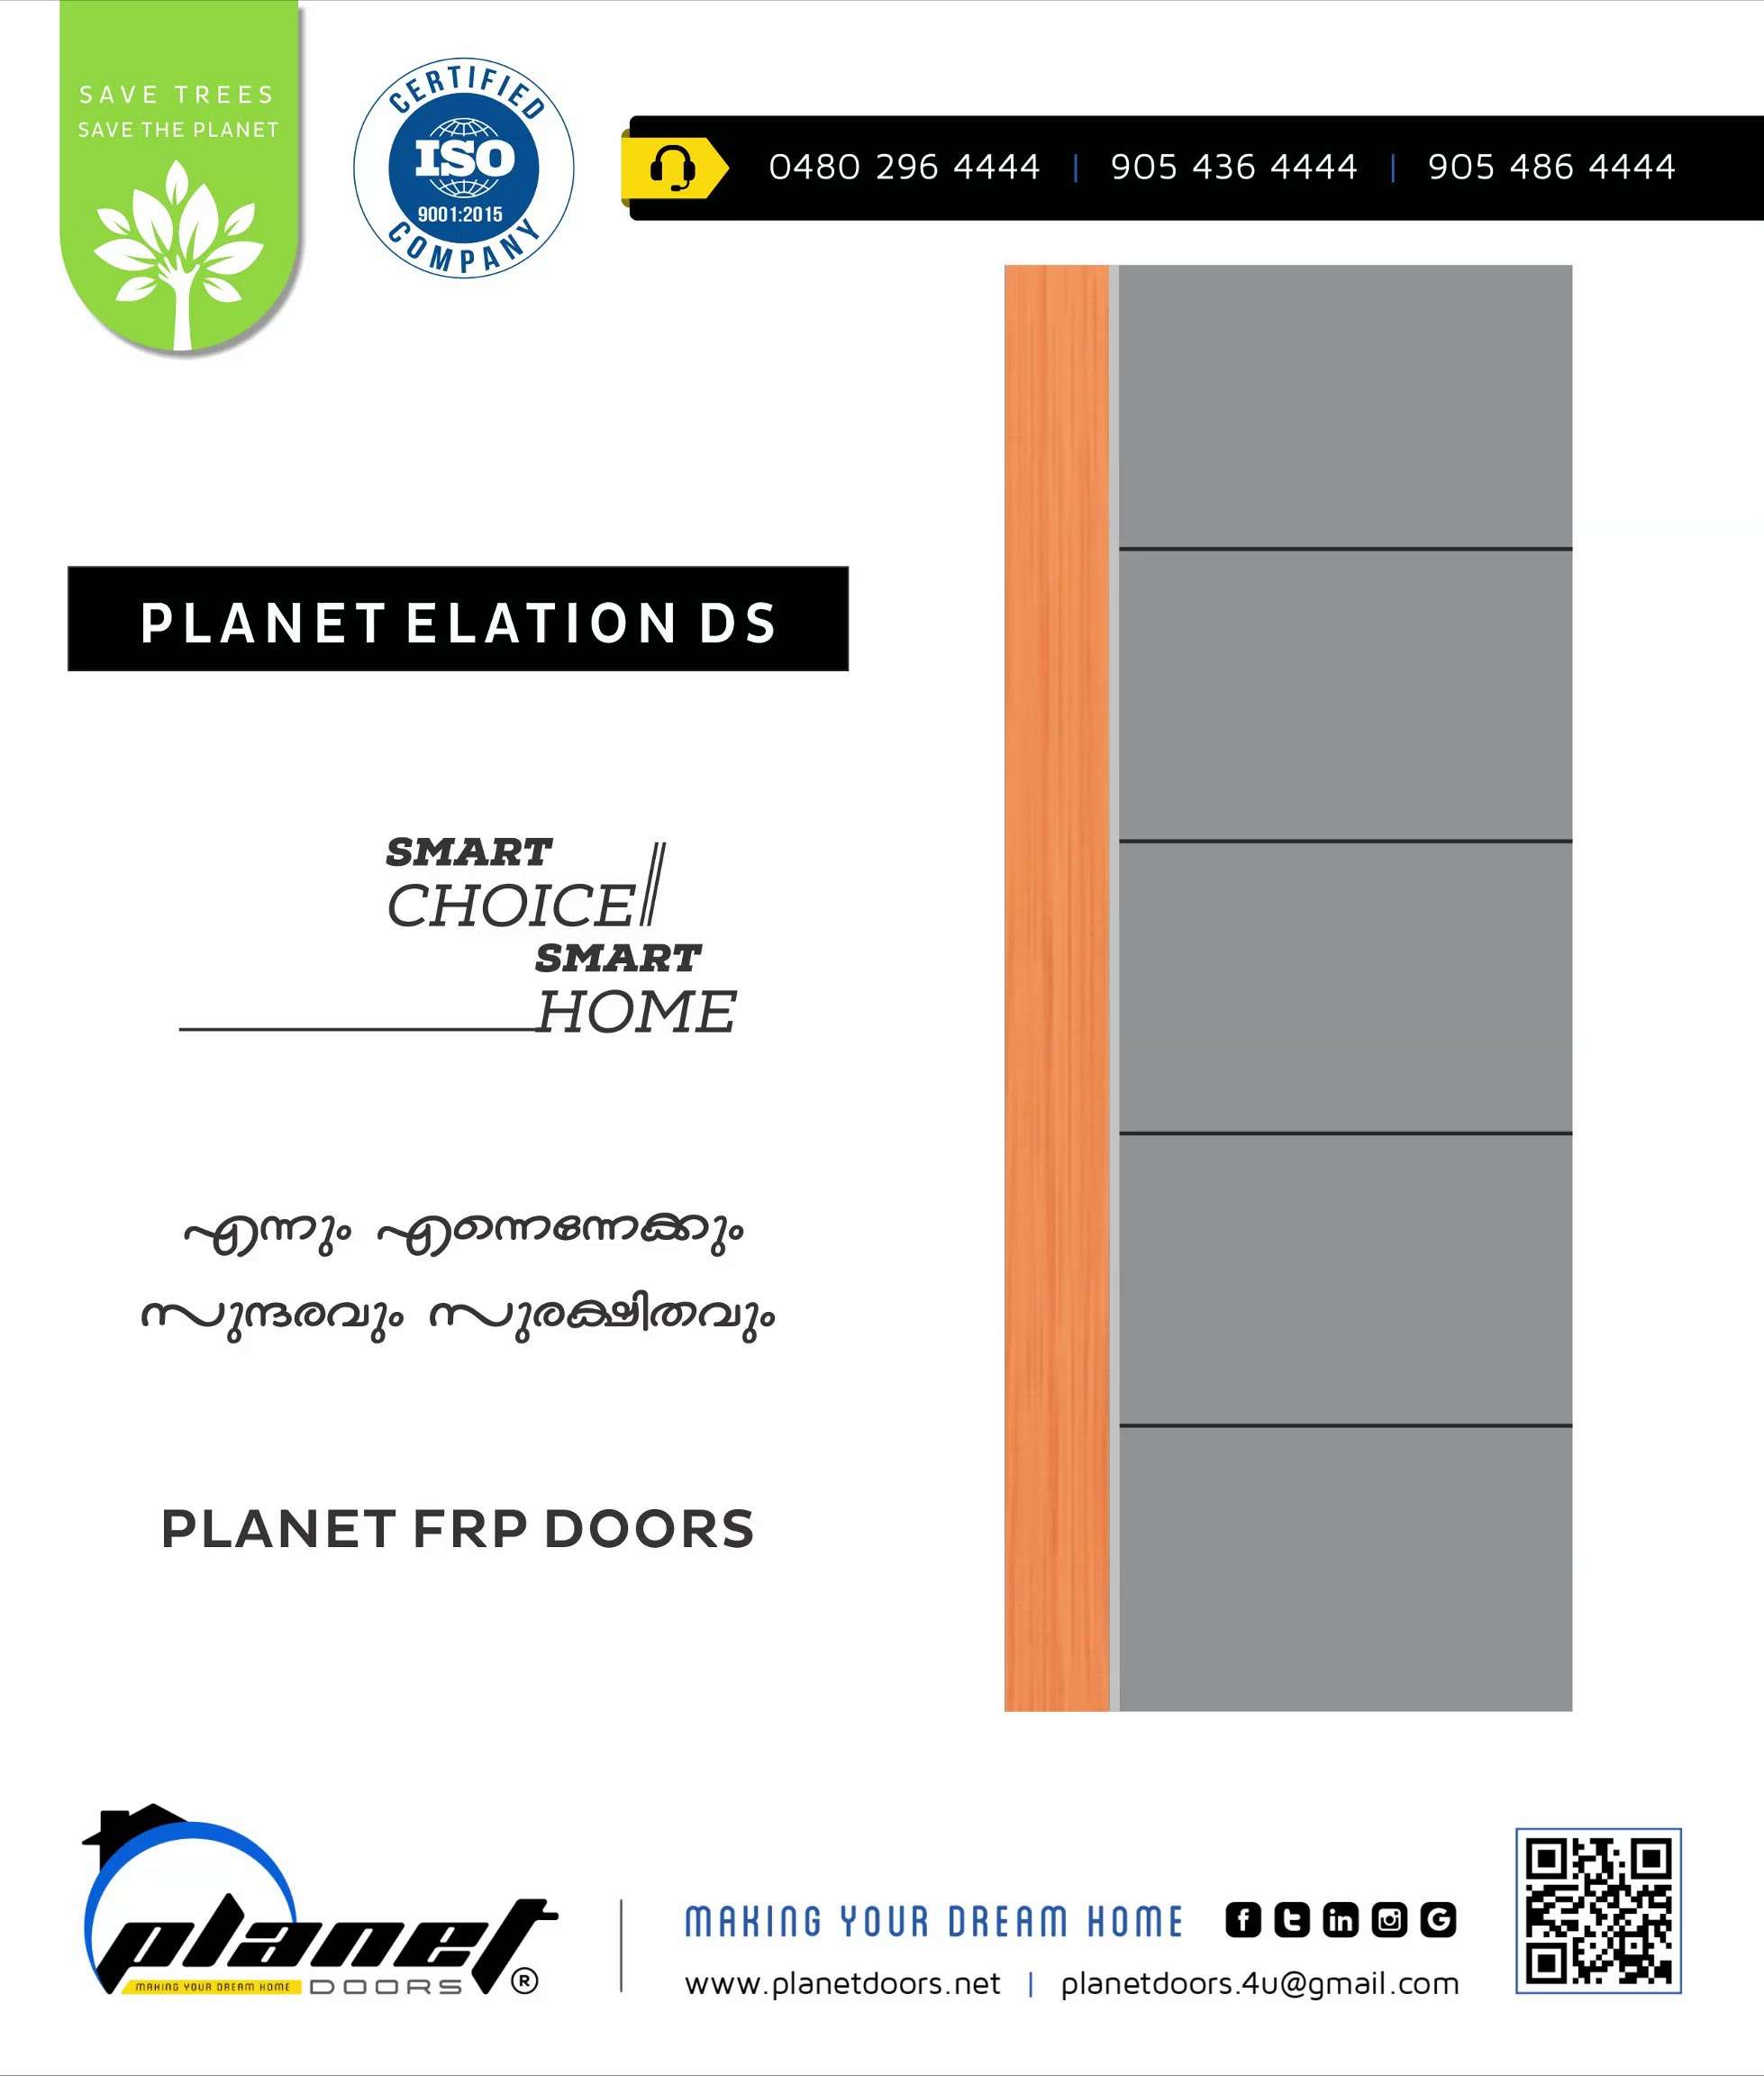 𝗣𝗟𝗔𝗡𝗘𝗧 - 𝗙𝗥𝗣 𝗗𝗢𝗢𝗥𝗦🚪

👉 𝘽𝙀𝘿𝙍𝙊𝙊𝙈 𝘿𝙊𝙊𝙍𝙎 
👉 𝘽𝘼𝙏𝙃𝙍𝙊𝙊𝙈 𝘿𝙊𝙊𝙍𝙎 
👉 𝙆𝙄𝙏𝘾𝙃𝙀𝙉 𝘿𝙊𝙊𝙍𝙎 
👉 𝙊𝙁𝙁𝙄𝘾𝙀 𝘿𝙊𝙊𝙍𝙎

👉 𝙁𝙤𝙧 𝙢𝙤𝙧𝙚 𝙙𝙚𝙩𝙖𝙞𝙡𝙨 𝙘𝙤𝙣𝙩𝙖𝙘𝙩 𝙪𝙨: 04802964444 - 9054364444 - 9054864444.

👉 https://wa.me/919054364444 - https://wa.me/919054864444






#planetdoors #thrissur #kerala

#doors #pvcdoors #upvcdoors #frpdoors #fiberdoors #mouldeddoors #skindoors #paneldoors #glassdoors #steeldoors #decorativedoors #bathroomdoors #bedroomdoors #kitchendoors #curtain #blinds #windows #home #decor #interior